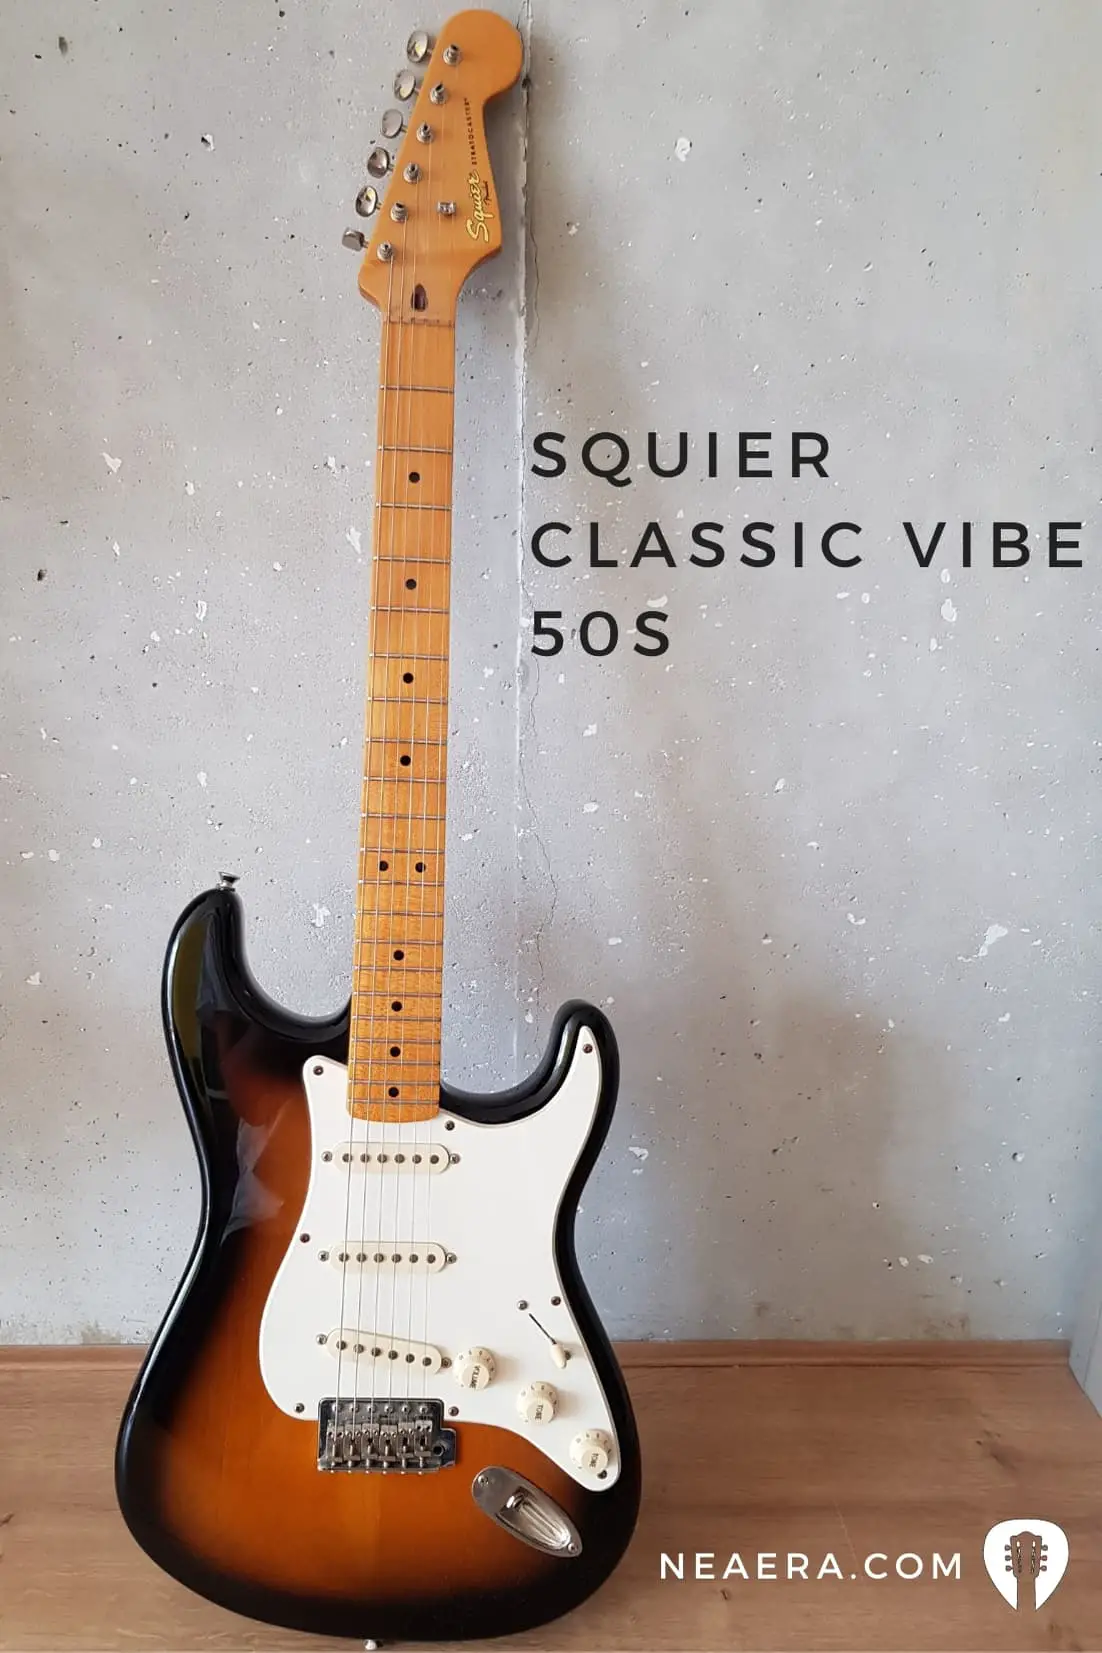 En xeral, a mellor guitarra para principiantes Squier Classic Vibe 'Stratocaster dos anos 50